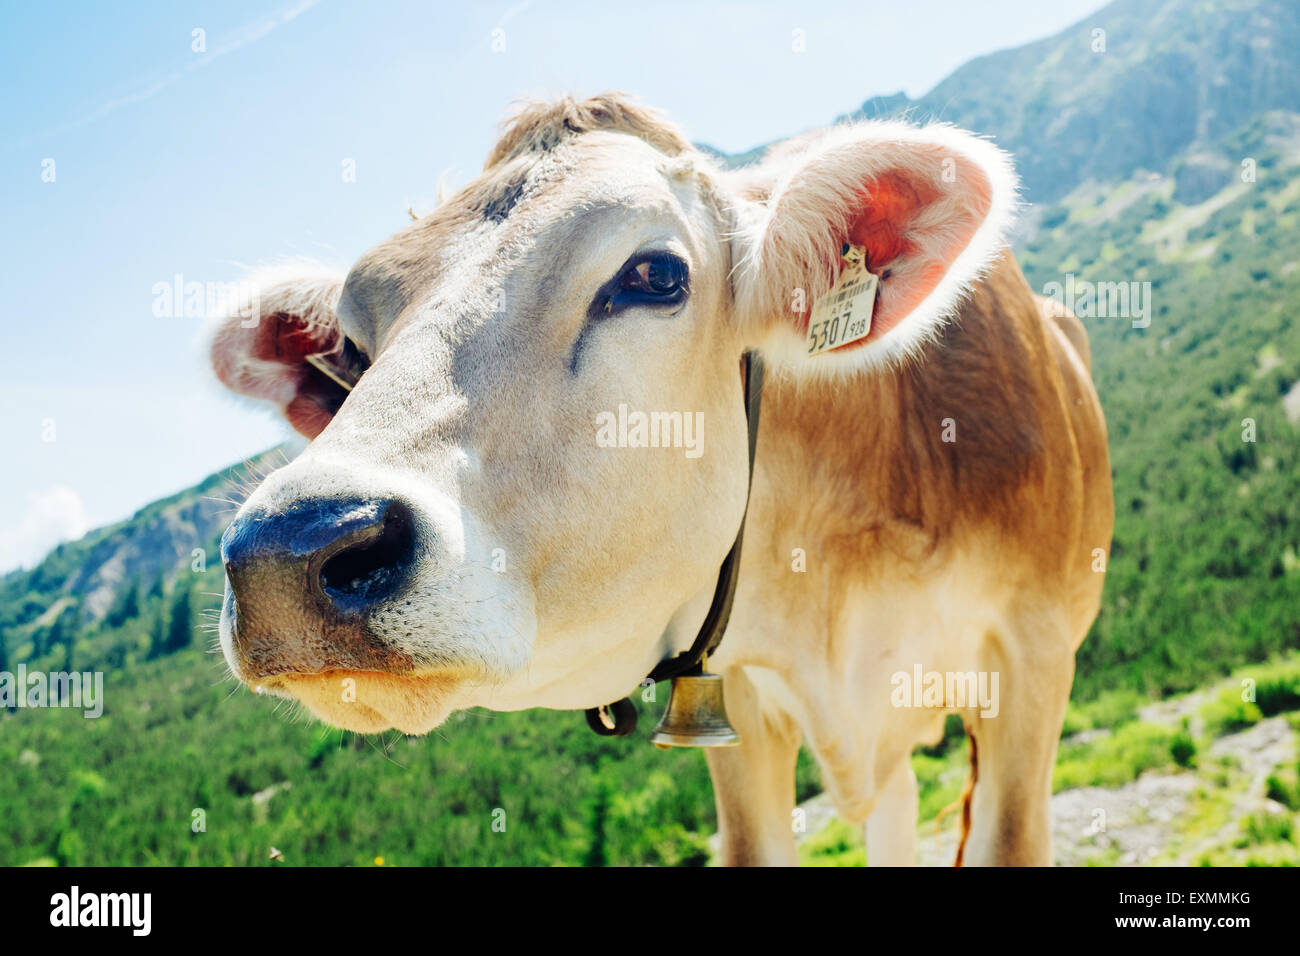 A cow in Tannheimer Tal, Austria Stock Photo